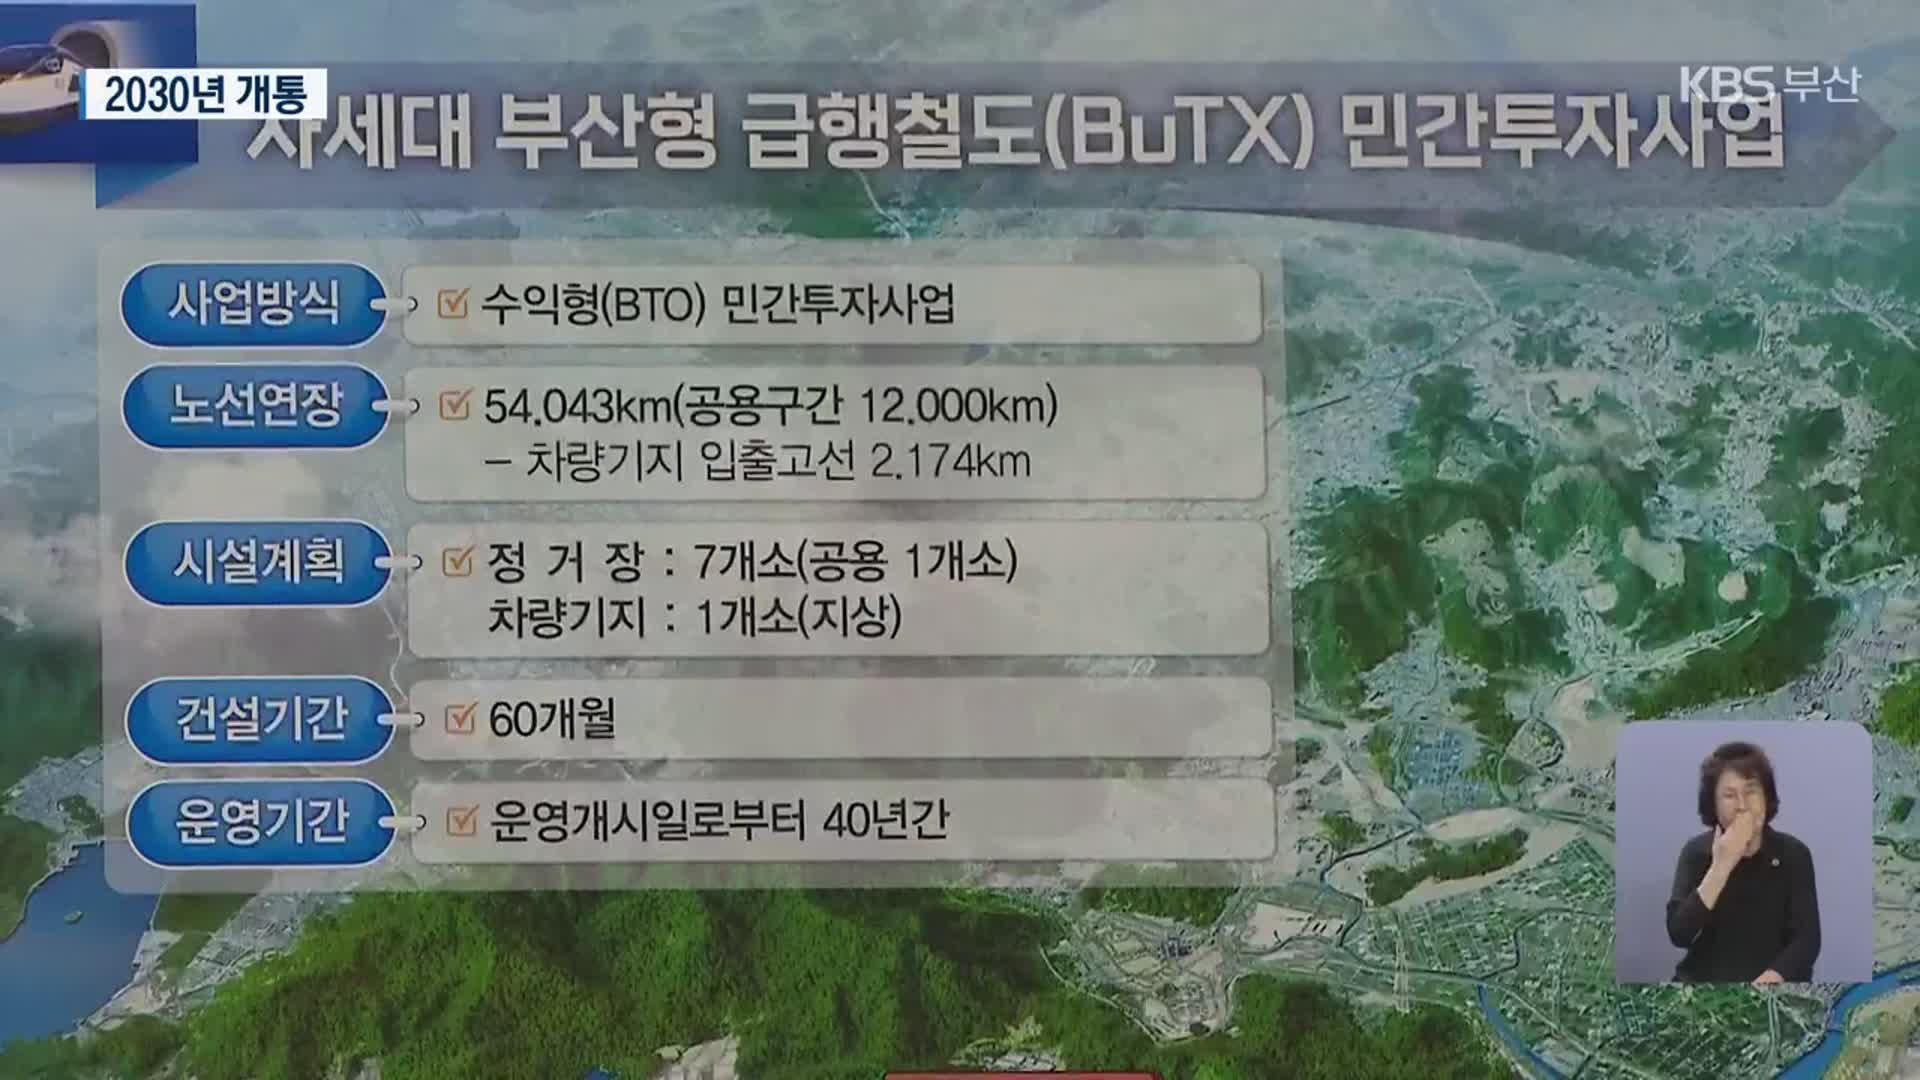 민자 4조 7천억 부산형 급행철도(BuTX)…‘부전역’ 추가